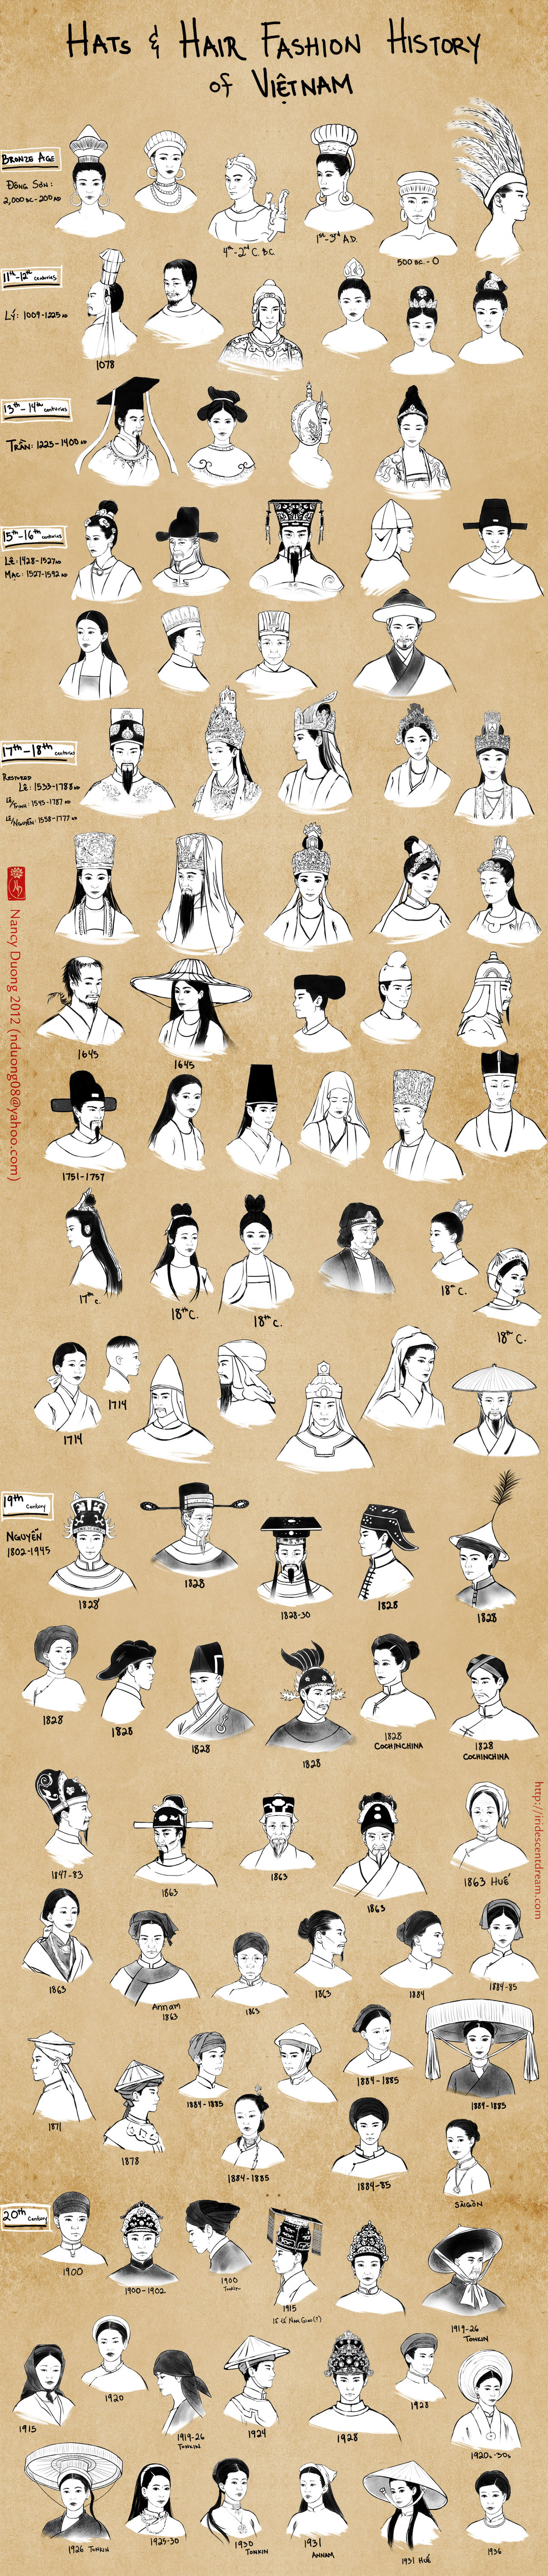 tapchidangnho hats and hair fashion history vietnam by lilsuika - Các kiểu tóc Việt Nam xưa và nay